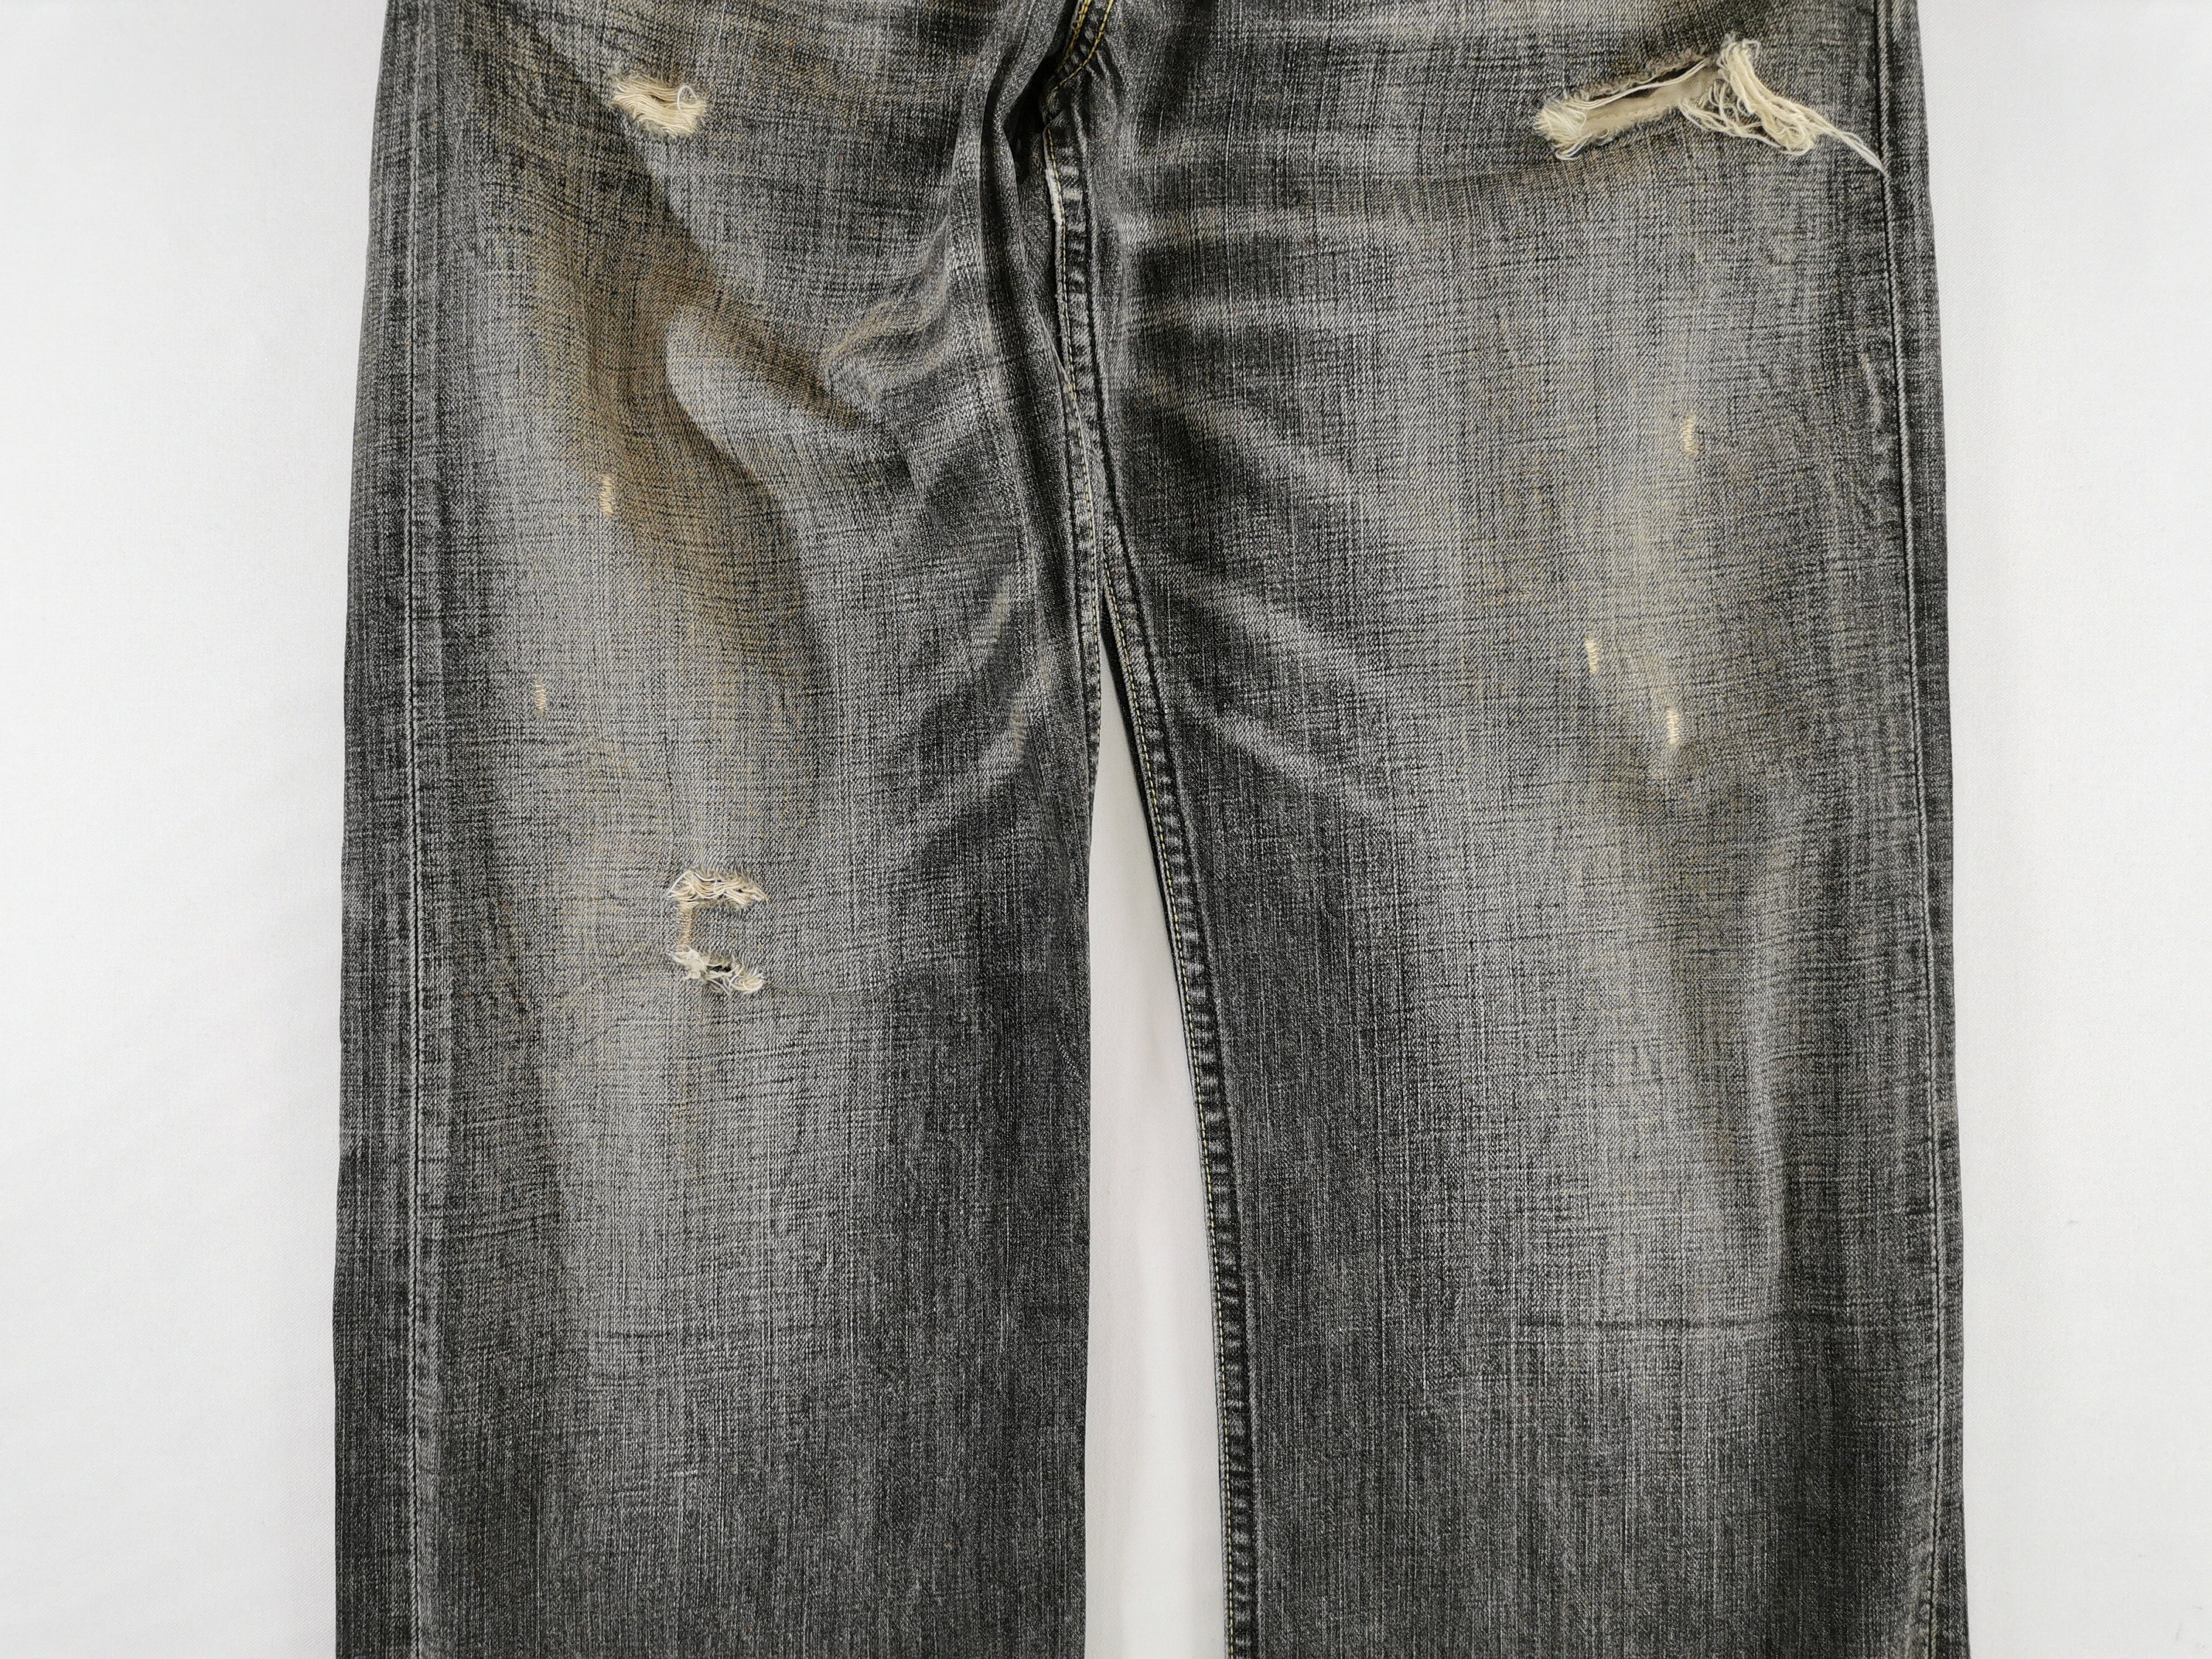 Levis 503 Jeans Distressed Vintage Size 30 Levis 503 Denim | Etsy